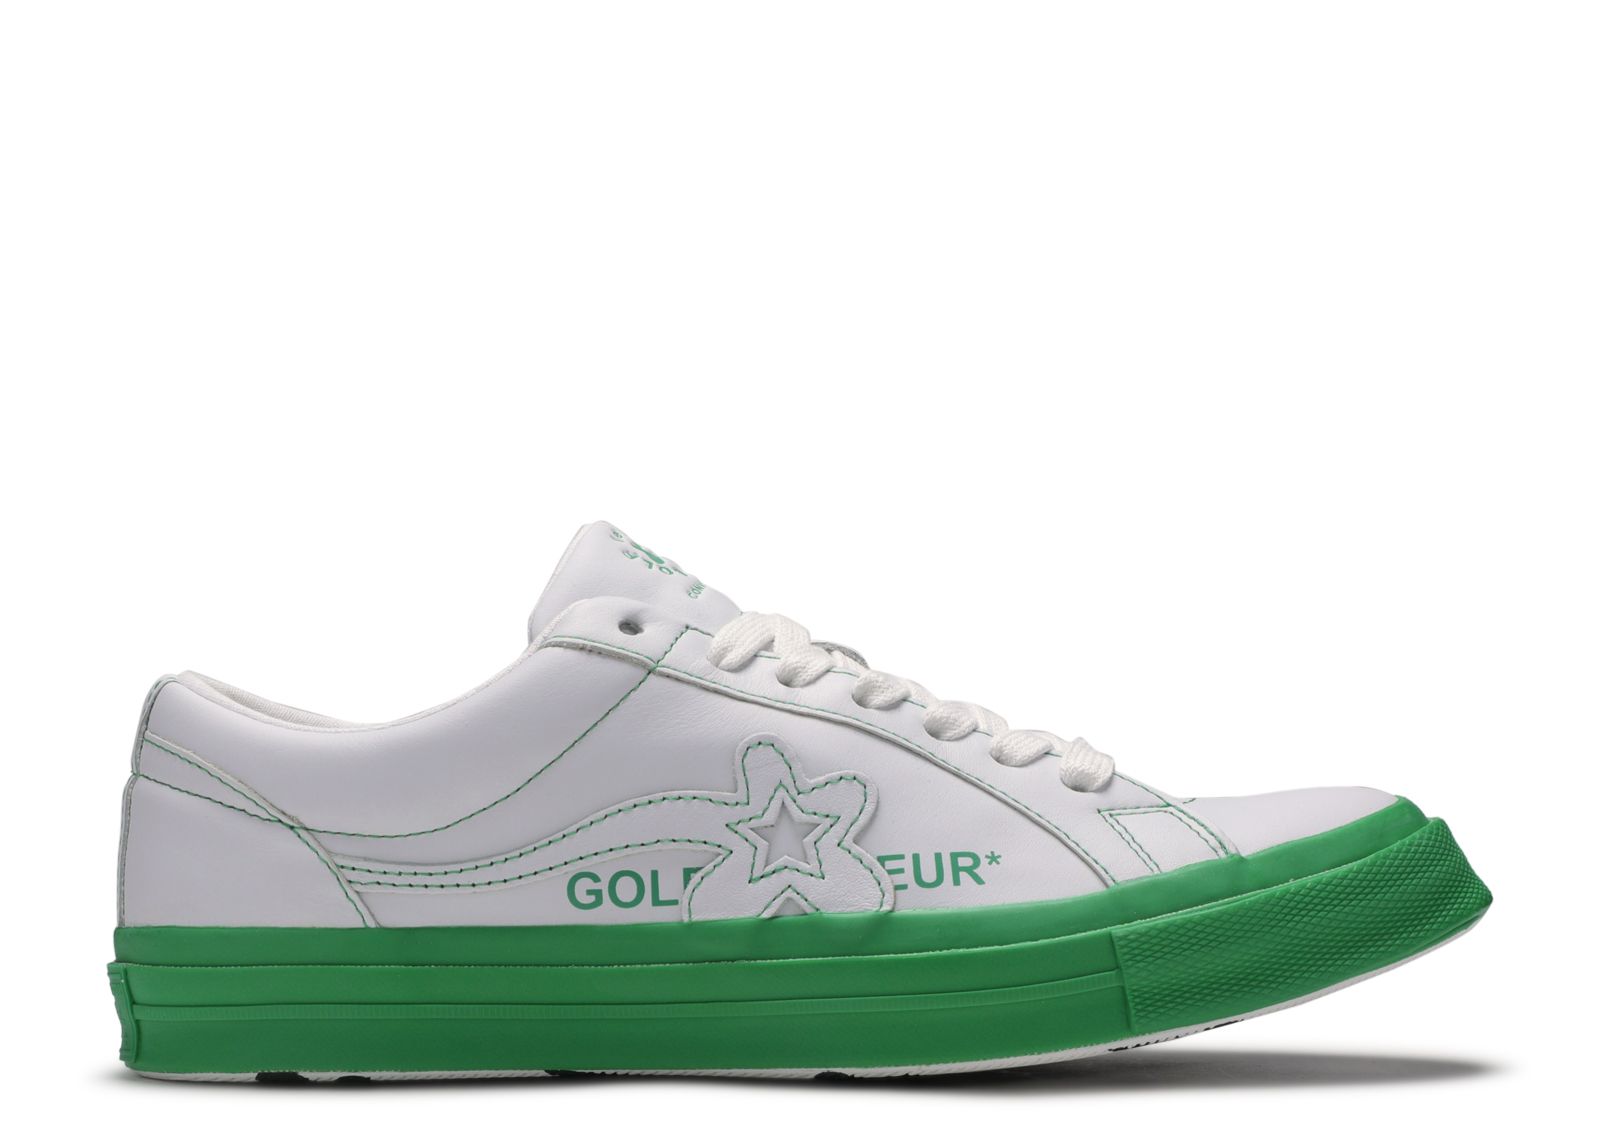 Кроссовки Converse Golf Le Fleur X One Star Ox 'Kelly Green', зеленый кроссовки converse golf le fleur x one star ox industrial pack grey белый